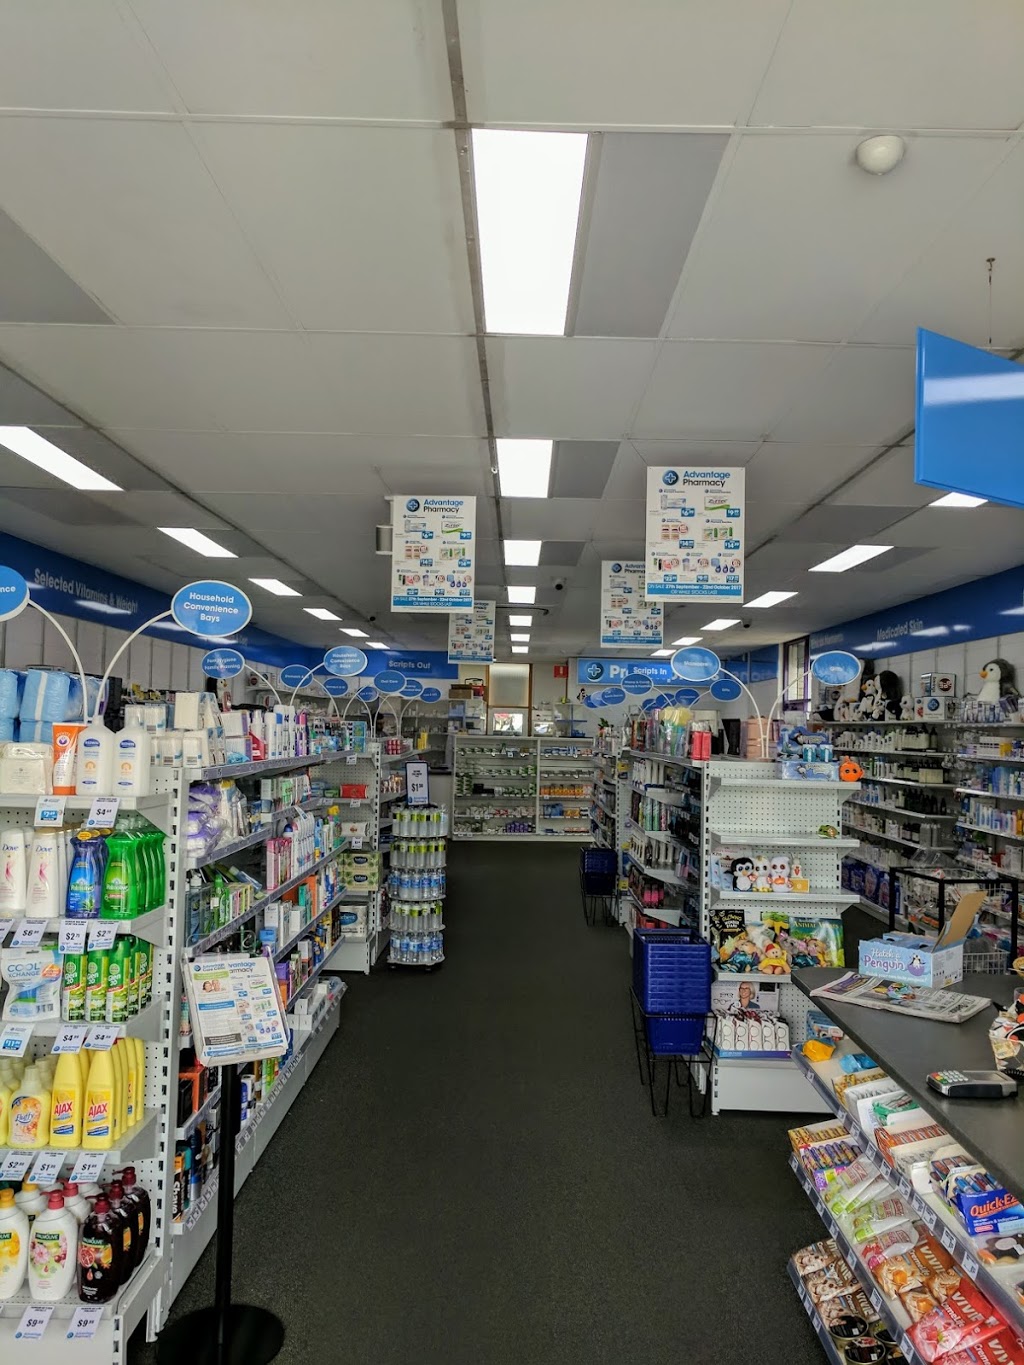 Penguin Pharmacy | 105 Main Rd, Penguin TAS 7316, Australia | Phone: (03) 6437 2262